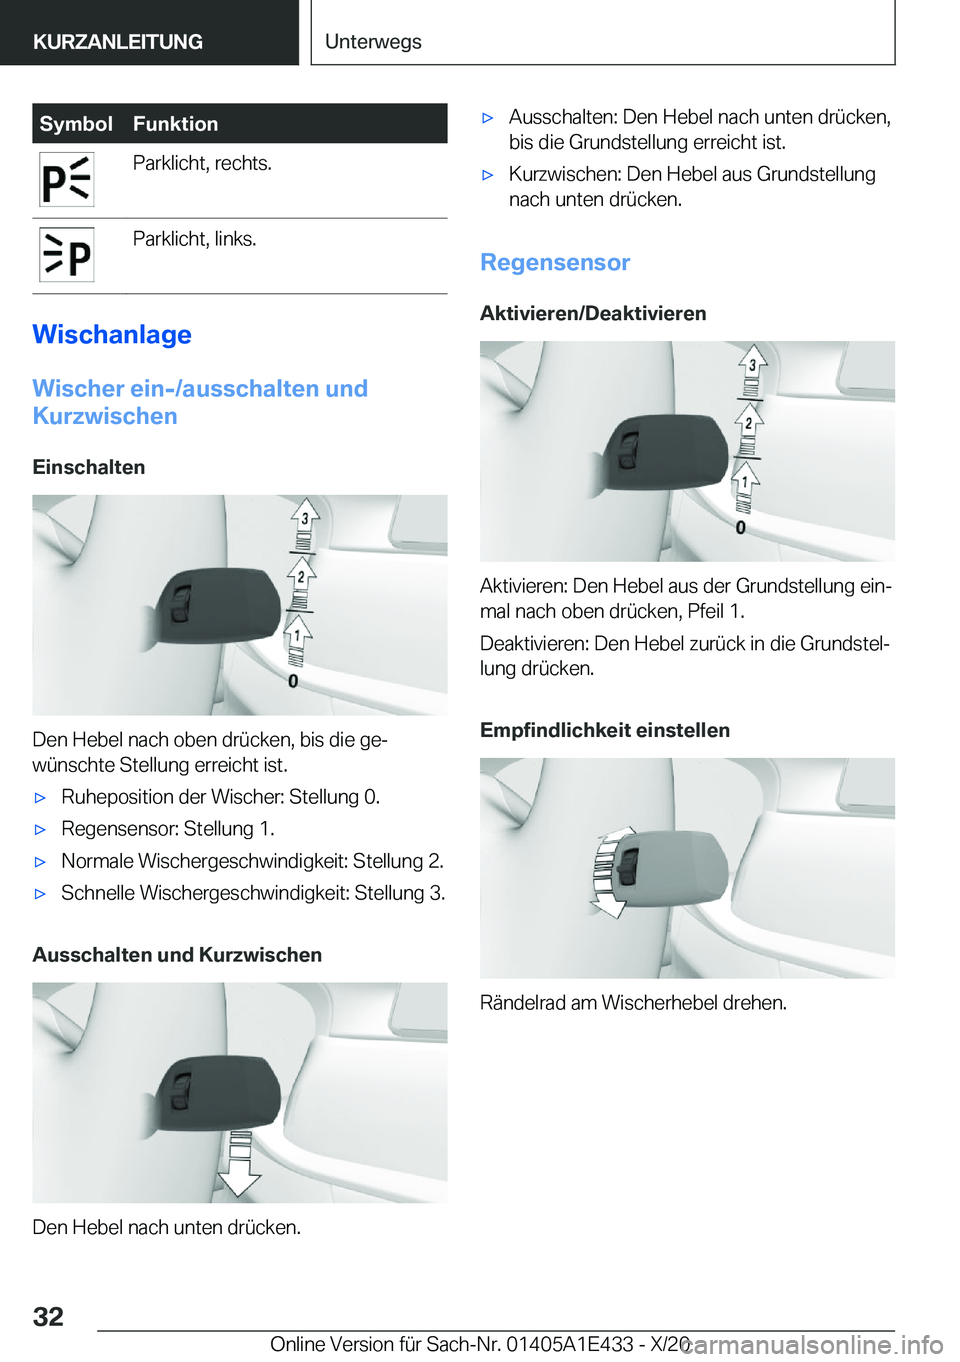 BMW M3 2021  Betriebsanleitungen (in German) �S�y�m�b�o�l�F�u�n�k�t�i�o�n�P�a�r�k�l�i�c�h�t�,��r�e�c�h�t�s�.�P�a�r�k�l�i�c�h�t�,��l�i�n�k�s�.
�W�i�s�c�h�a�n�l�a�g�e
�W�i�s�c�h�e�r��e�i�n�-�/�a�u�s�s�c�h�a�l�t�e�n��u�n�d
�K�u�r�z�w�i�s�c�h�e�